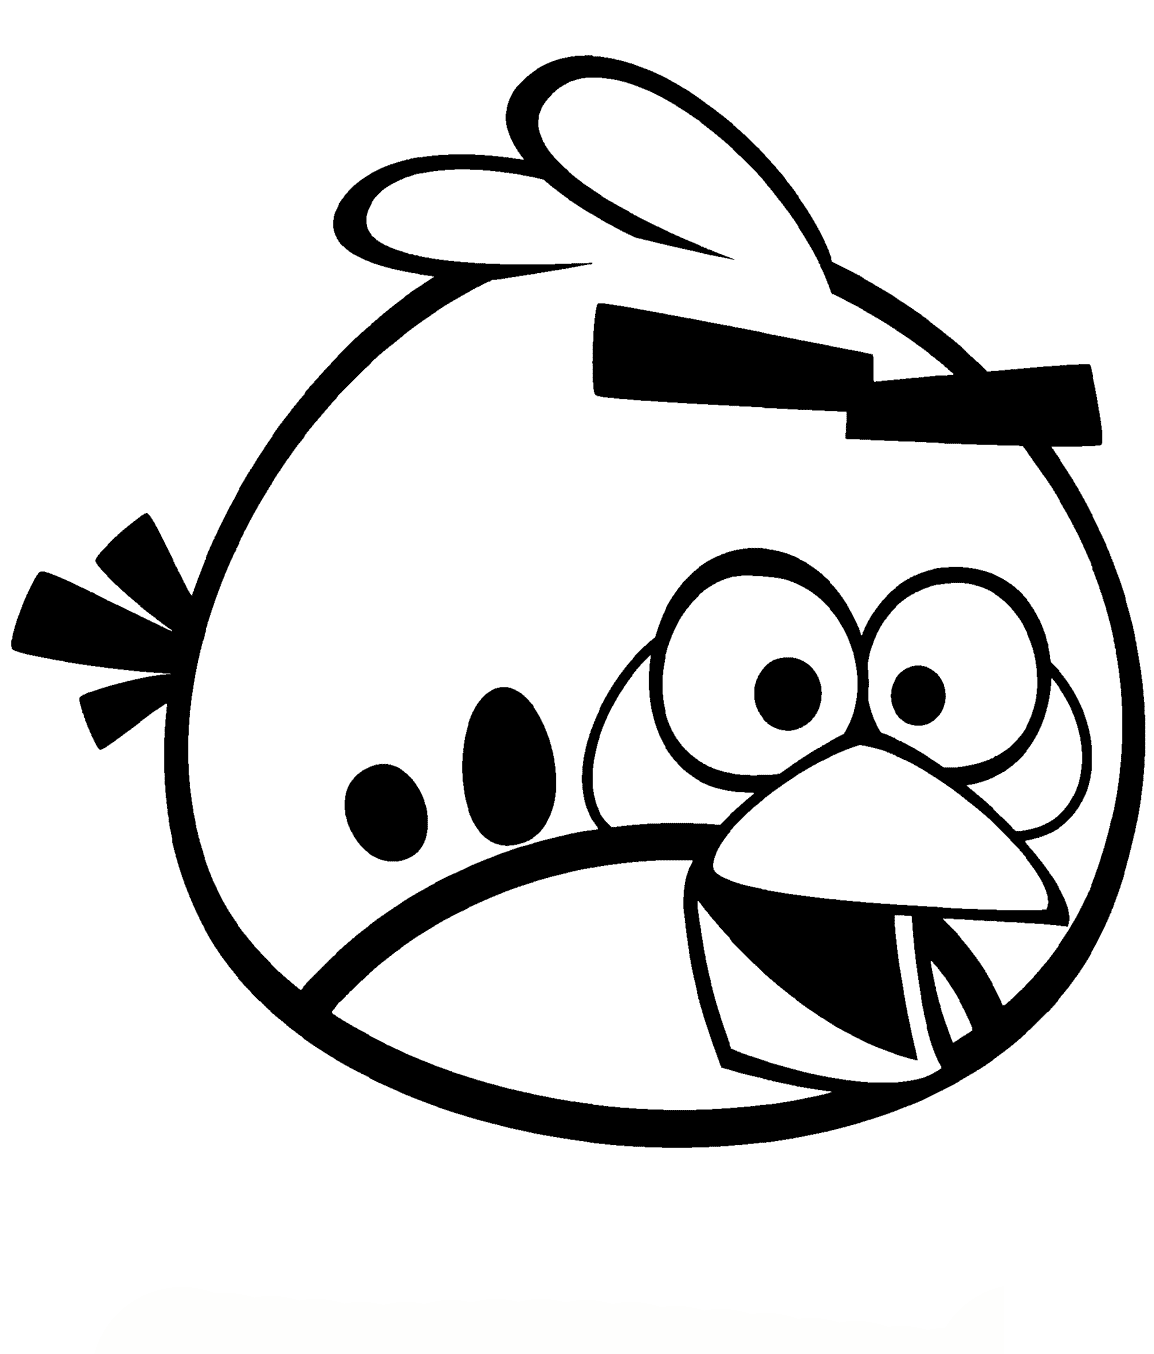 Tổng hợp các bức tranh tô màu Angry Birds đẹp nhất cho bé - [Kích thước hình ảnh: 1154x1354 px]